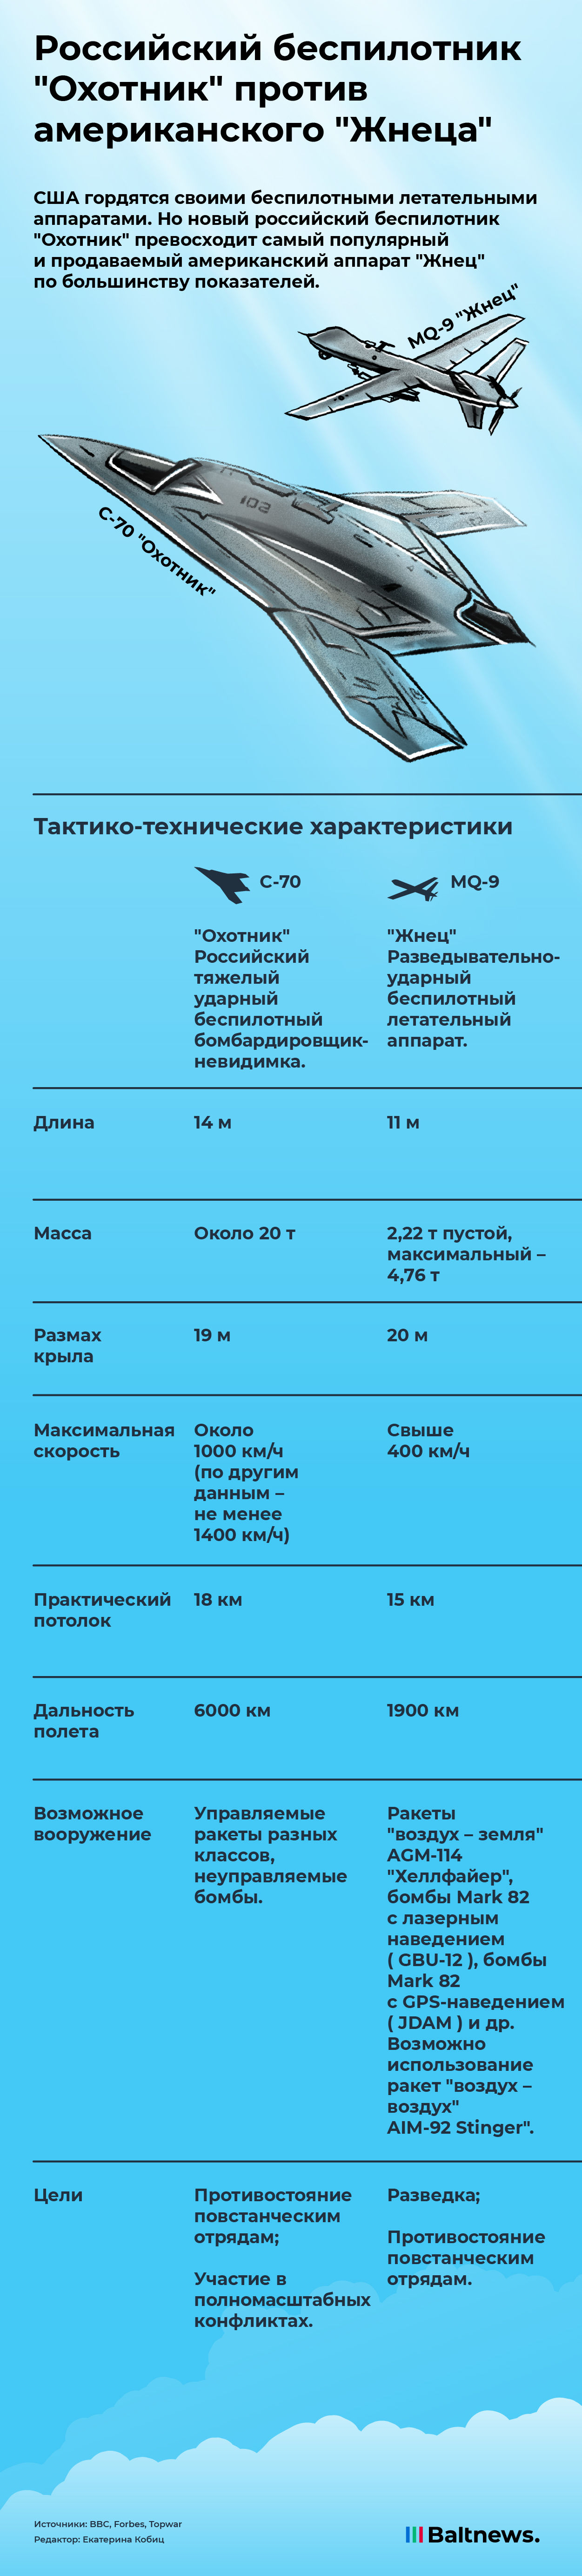 Сравнение беспилотников РФ и США